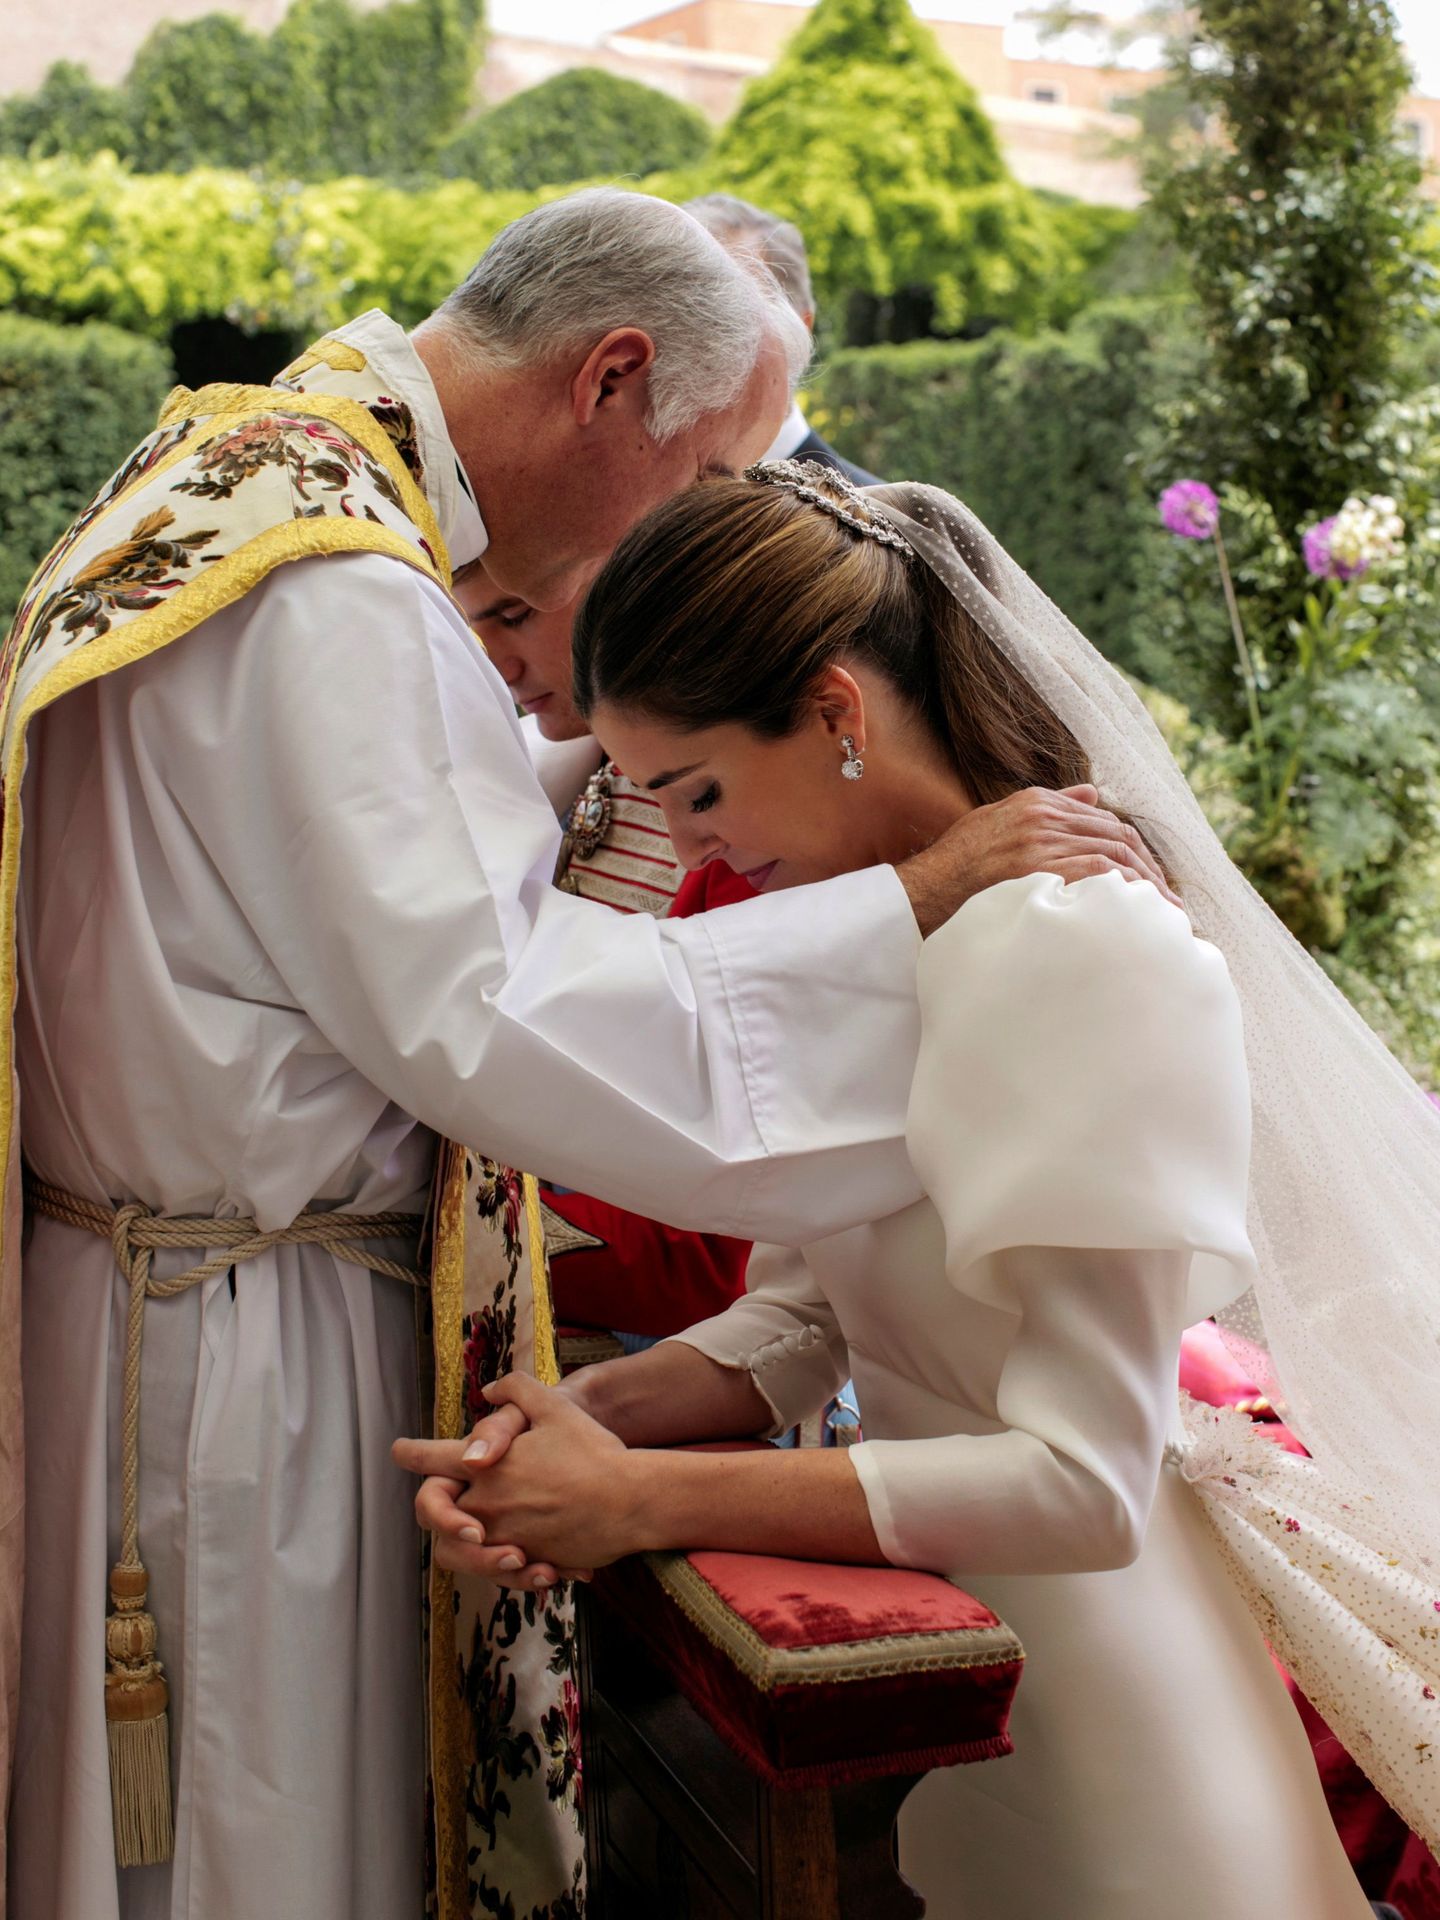 Un momento de la boda de los condes de Osorno. (Alejandra Ortiz Fotografía)